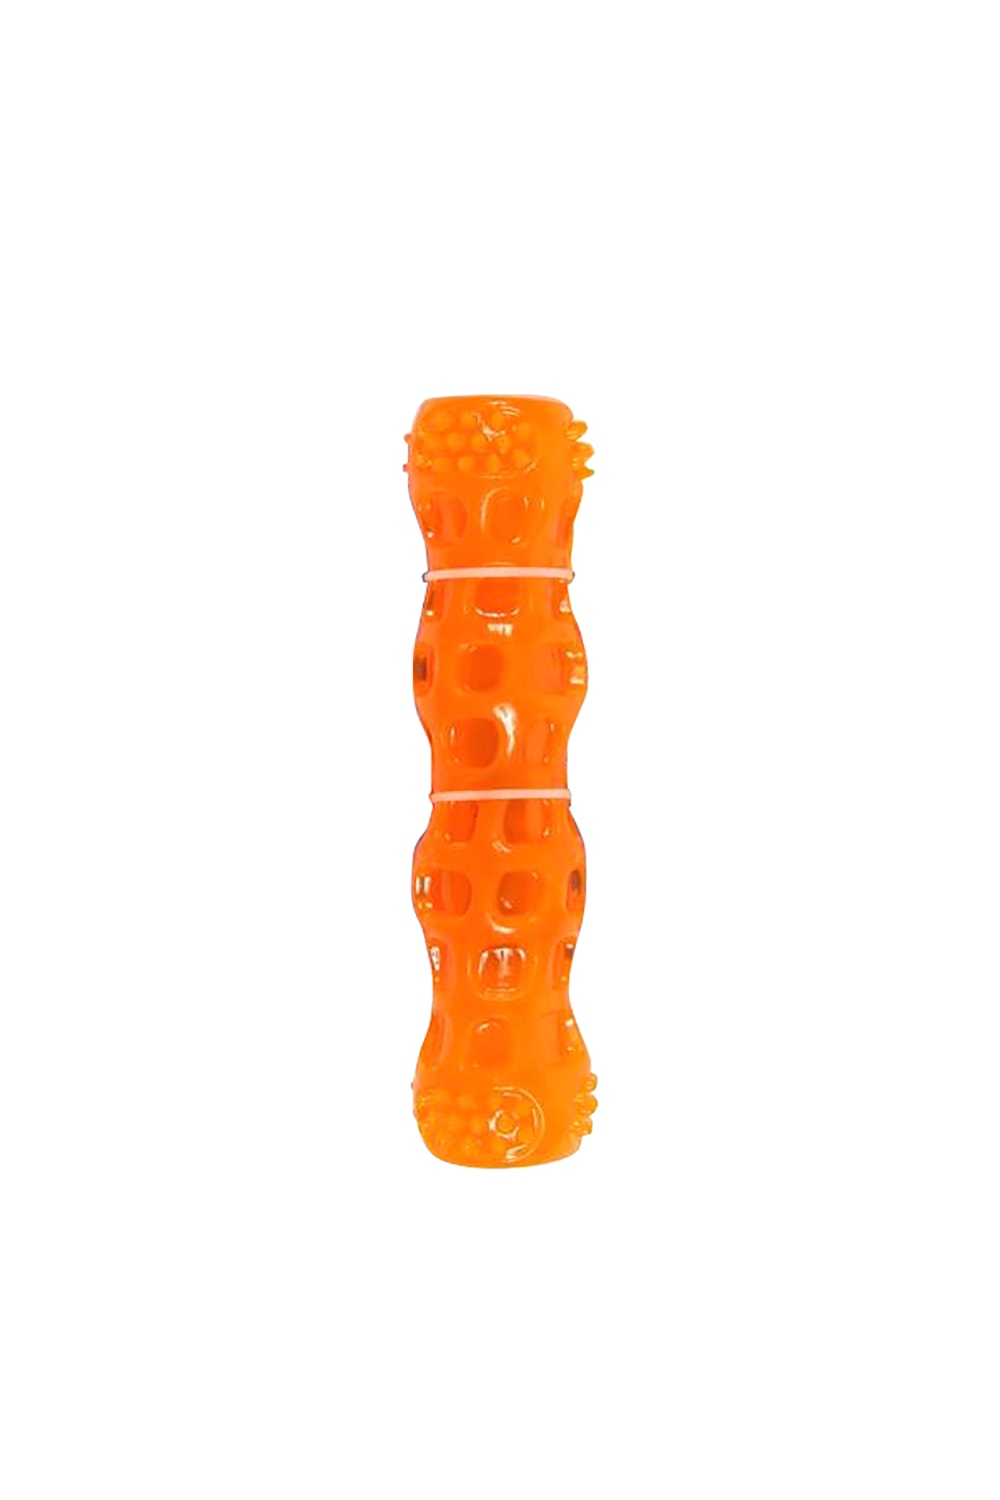 Animal Instincts Chewies Stick Dig Toy (Orange) (M)